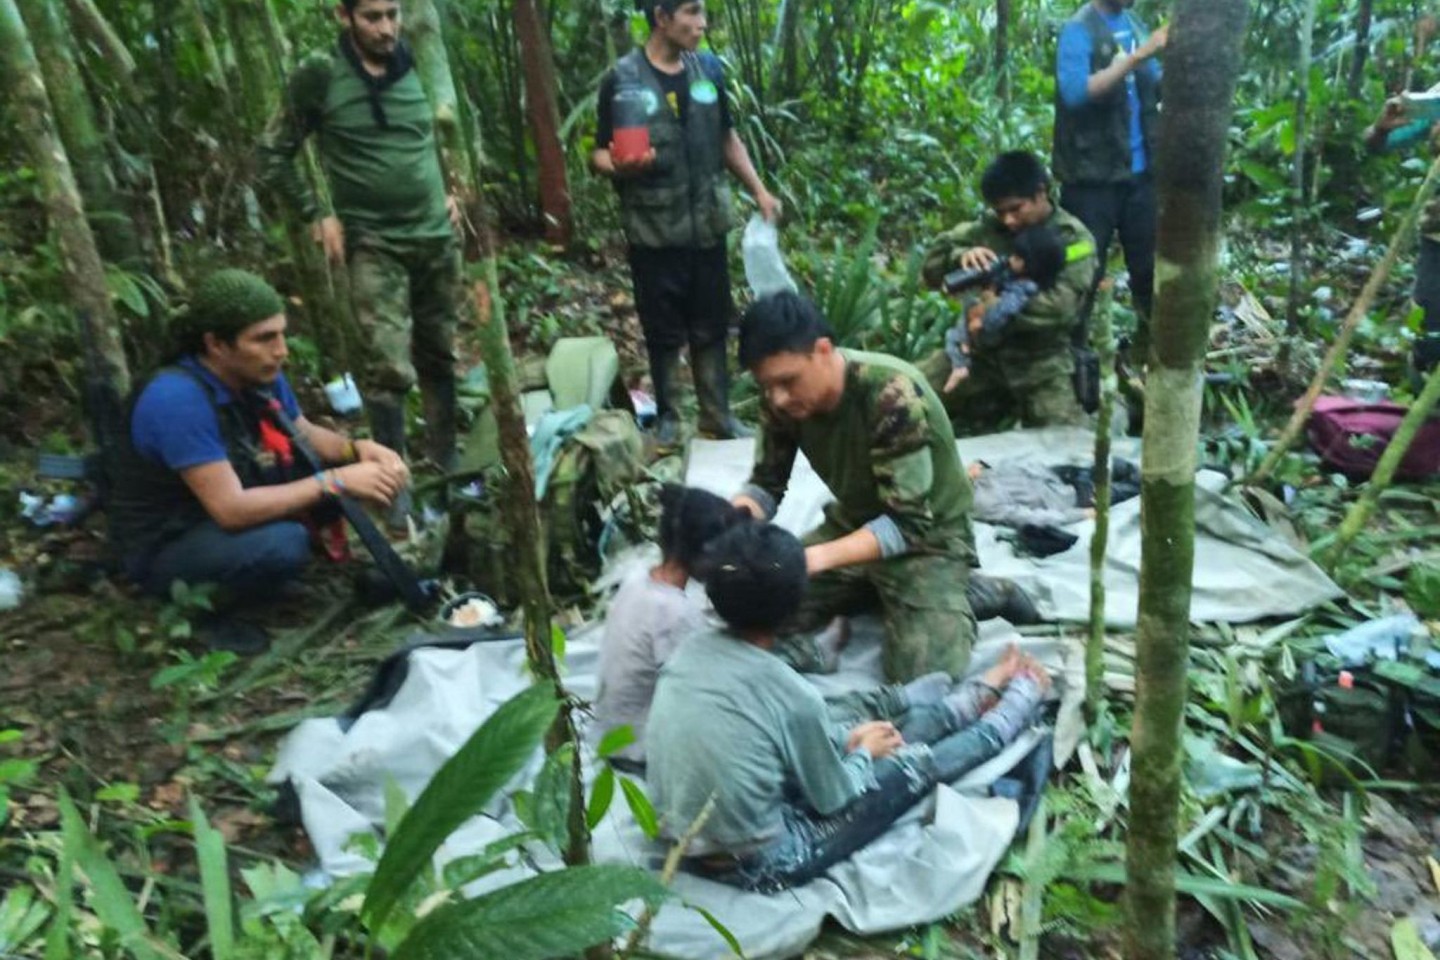 Kolumbianische Streitkräfte kümmern sich im Juni um die Geschwister, die nach einem tödlichen Flugzeugabsturz vermisst wurden.